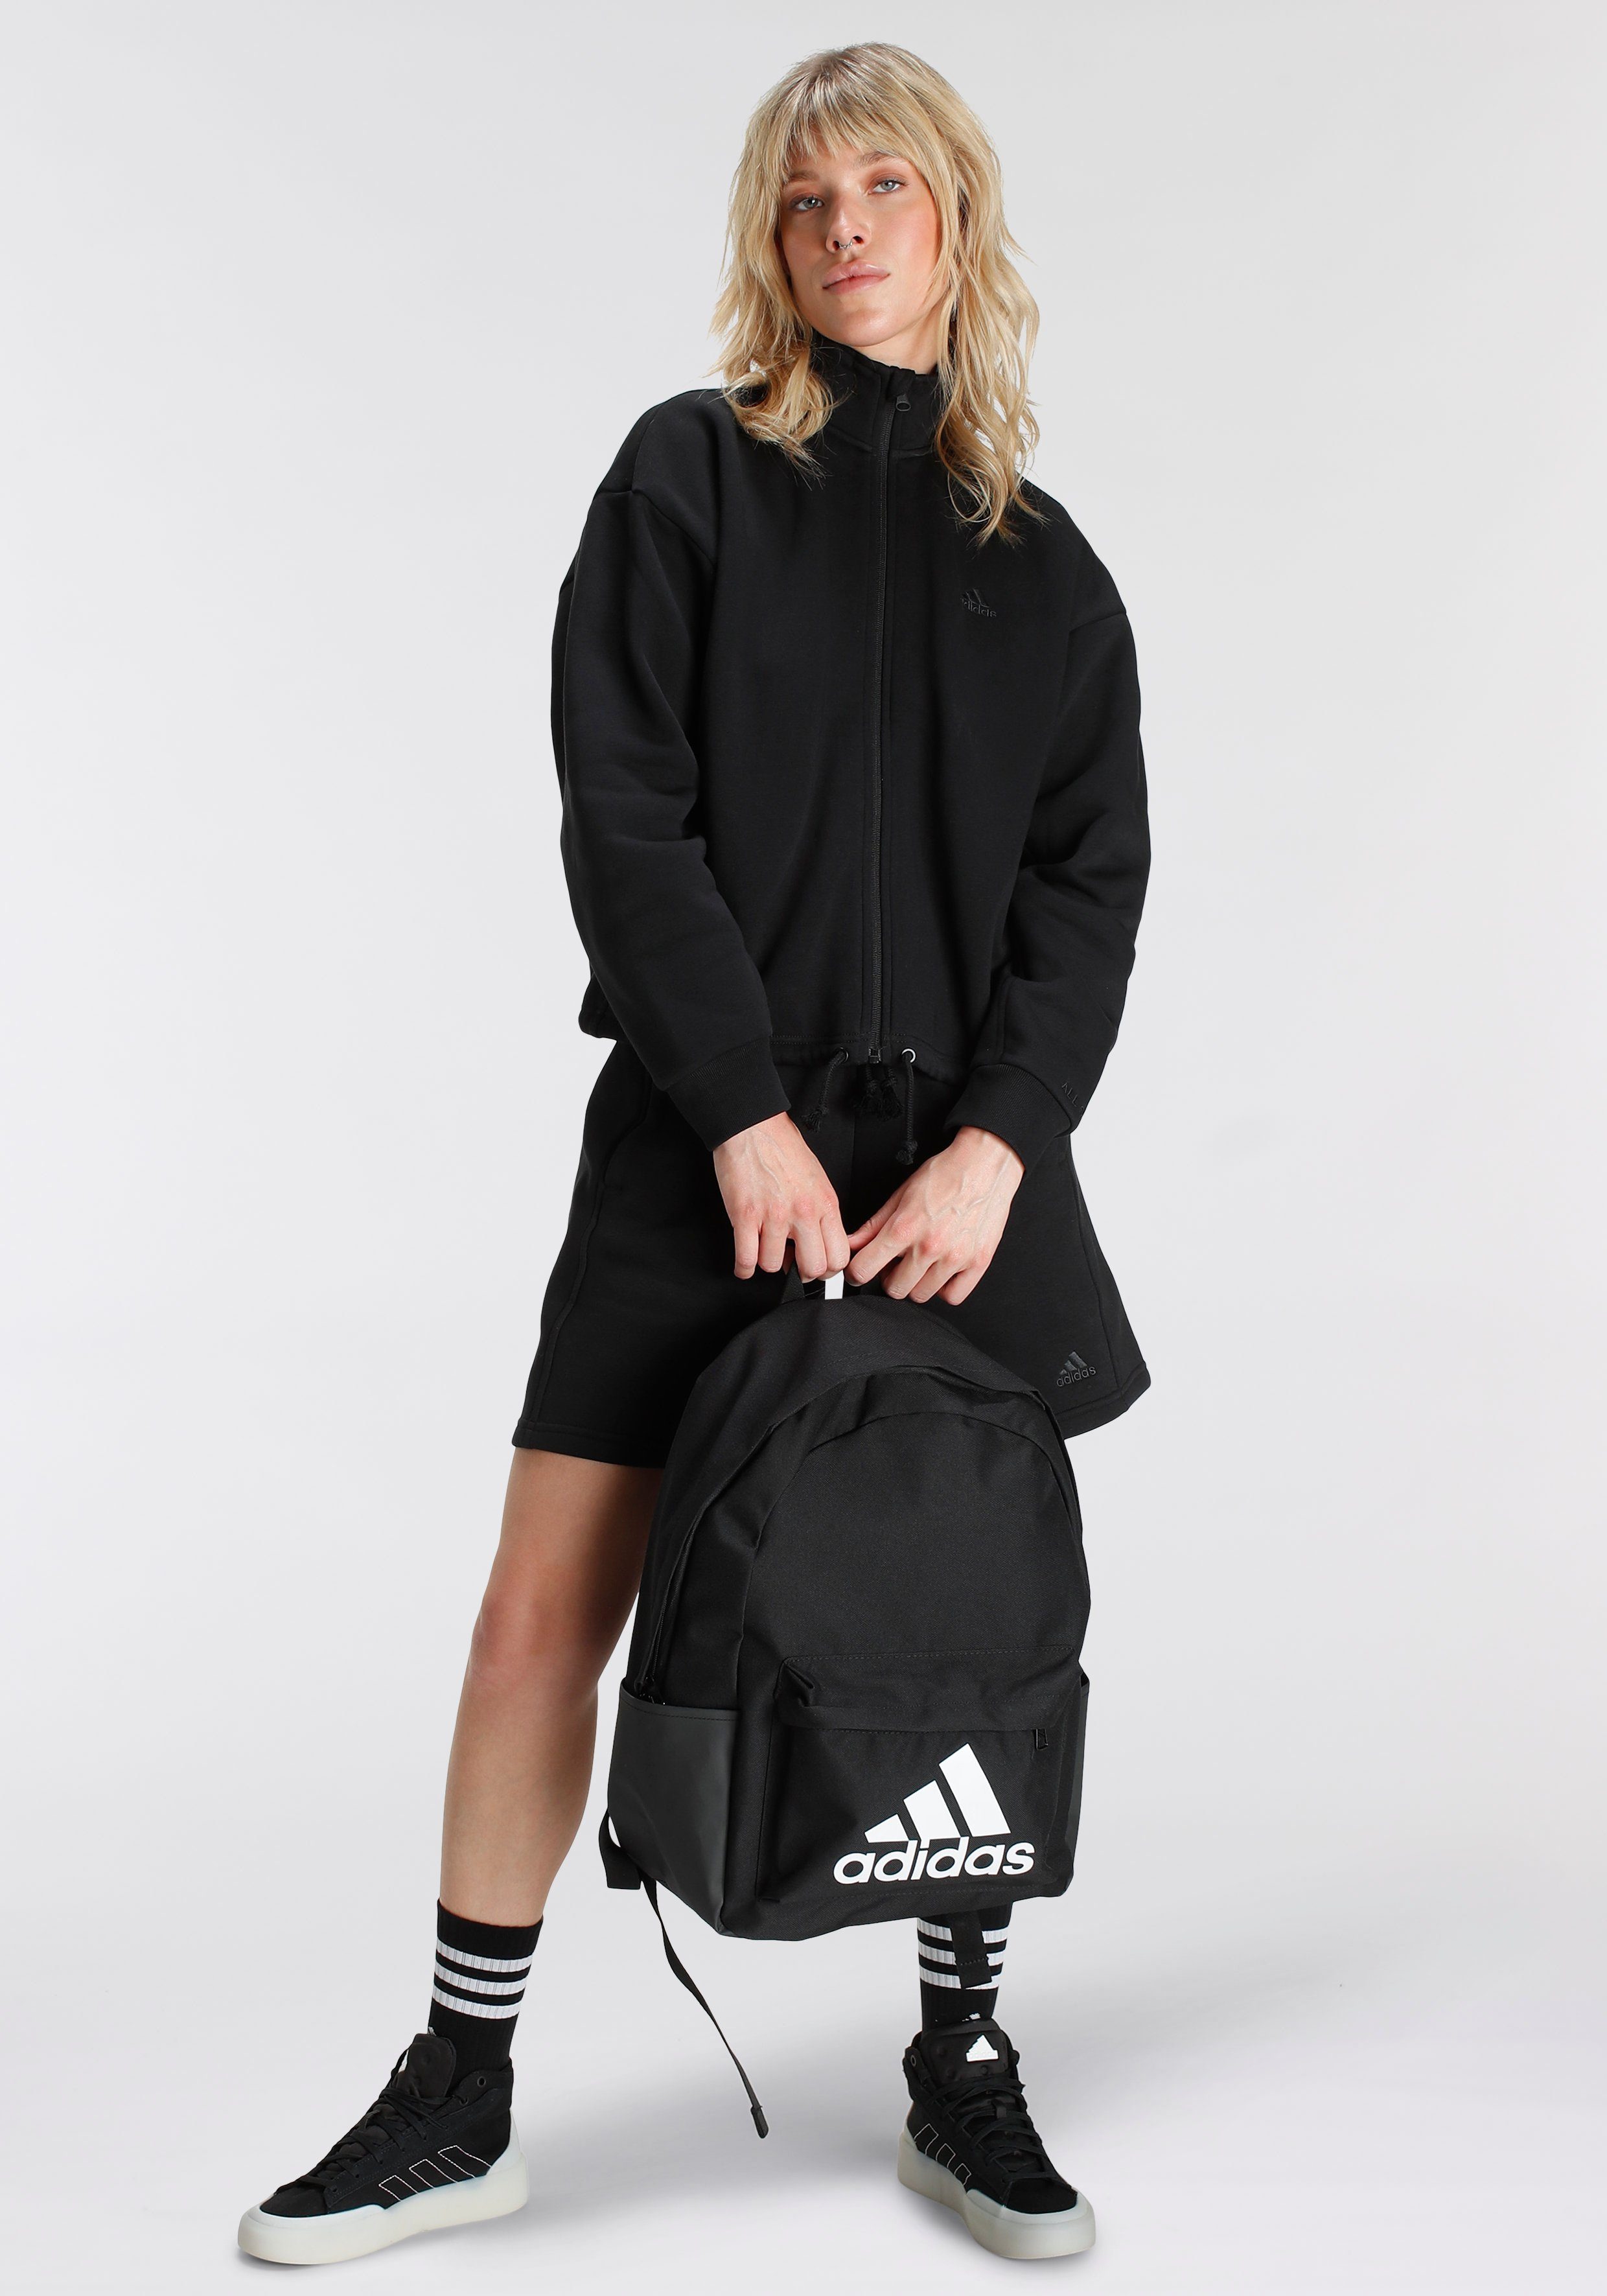 (1-tlg) Black FLEECE ALL adidas SZN Shorts Sportswear